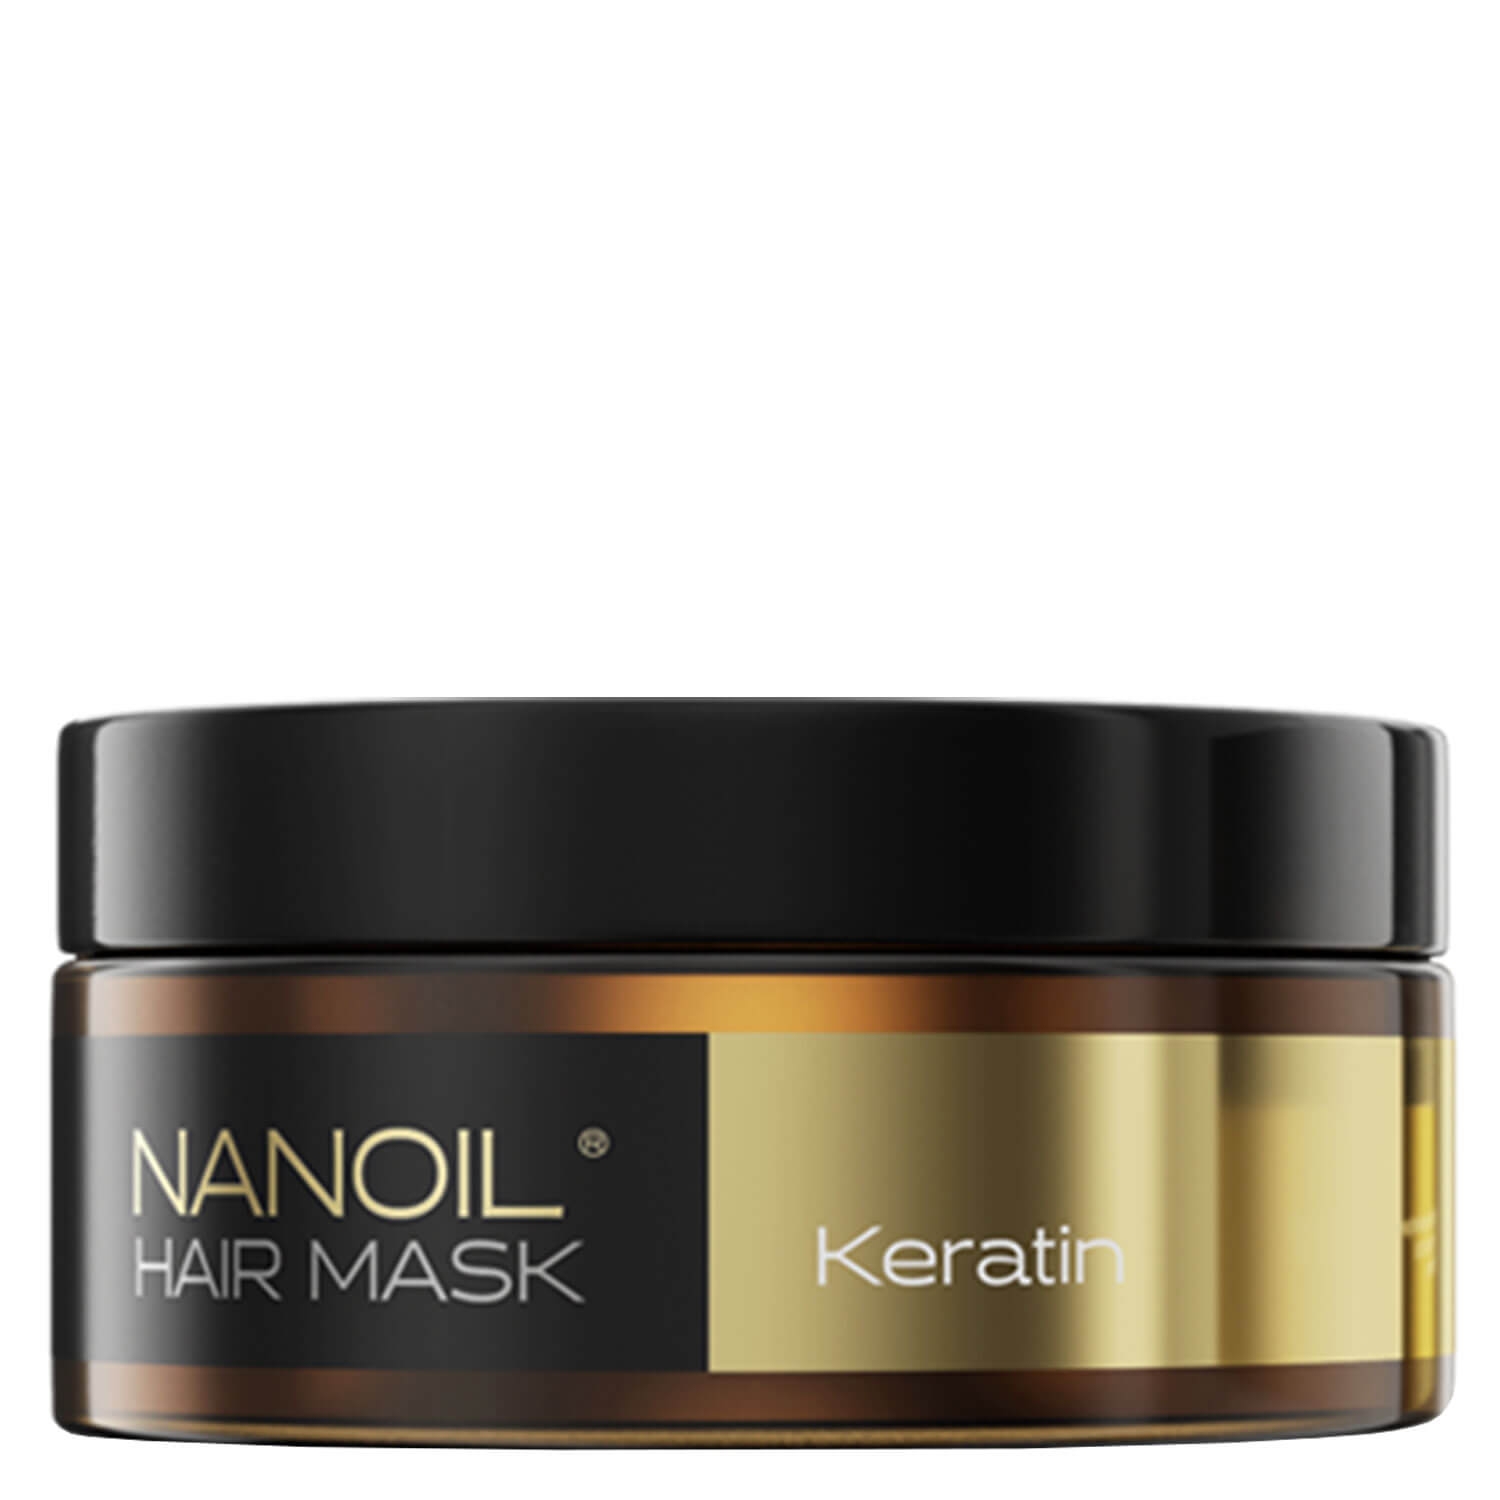 Produktbild von Nanoil - Haarmaske mit Keratin